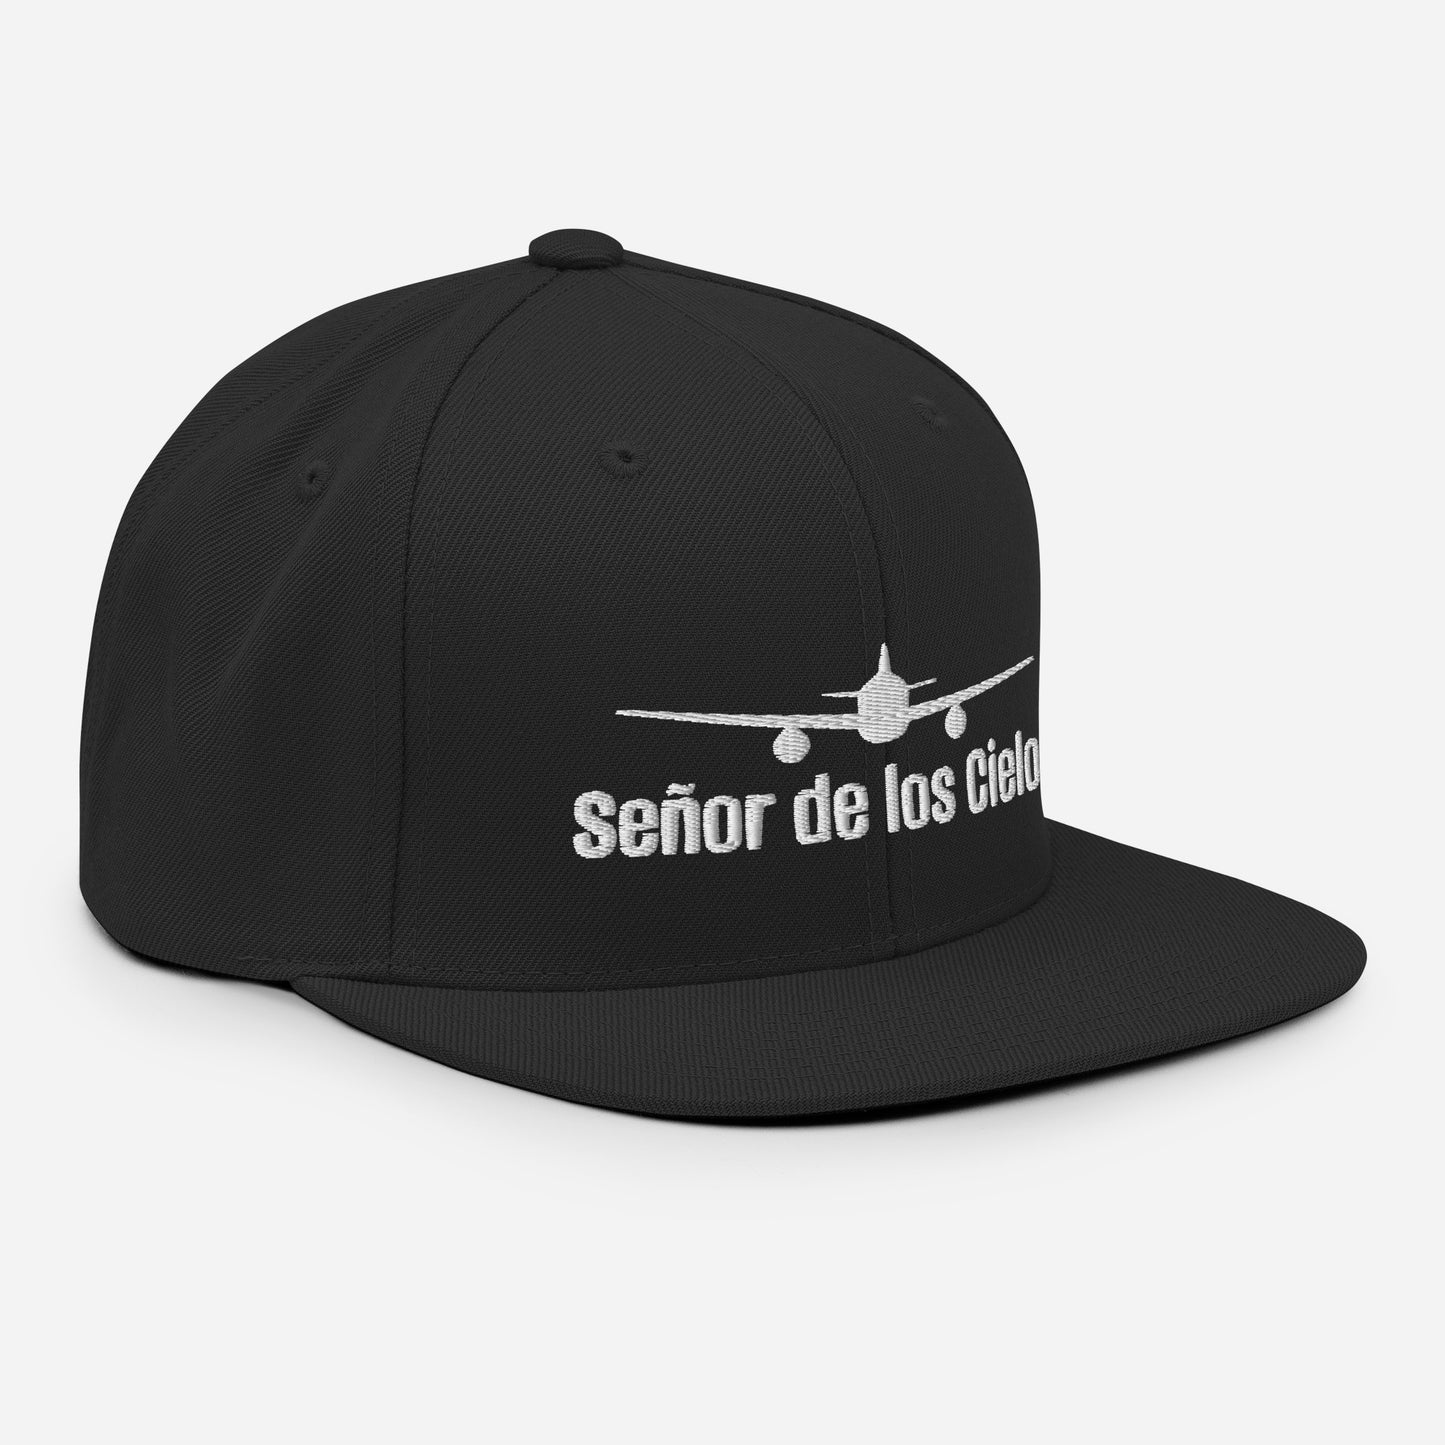 Senor de los cielos-Snapback Hat